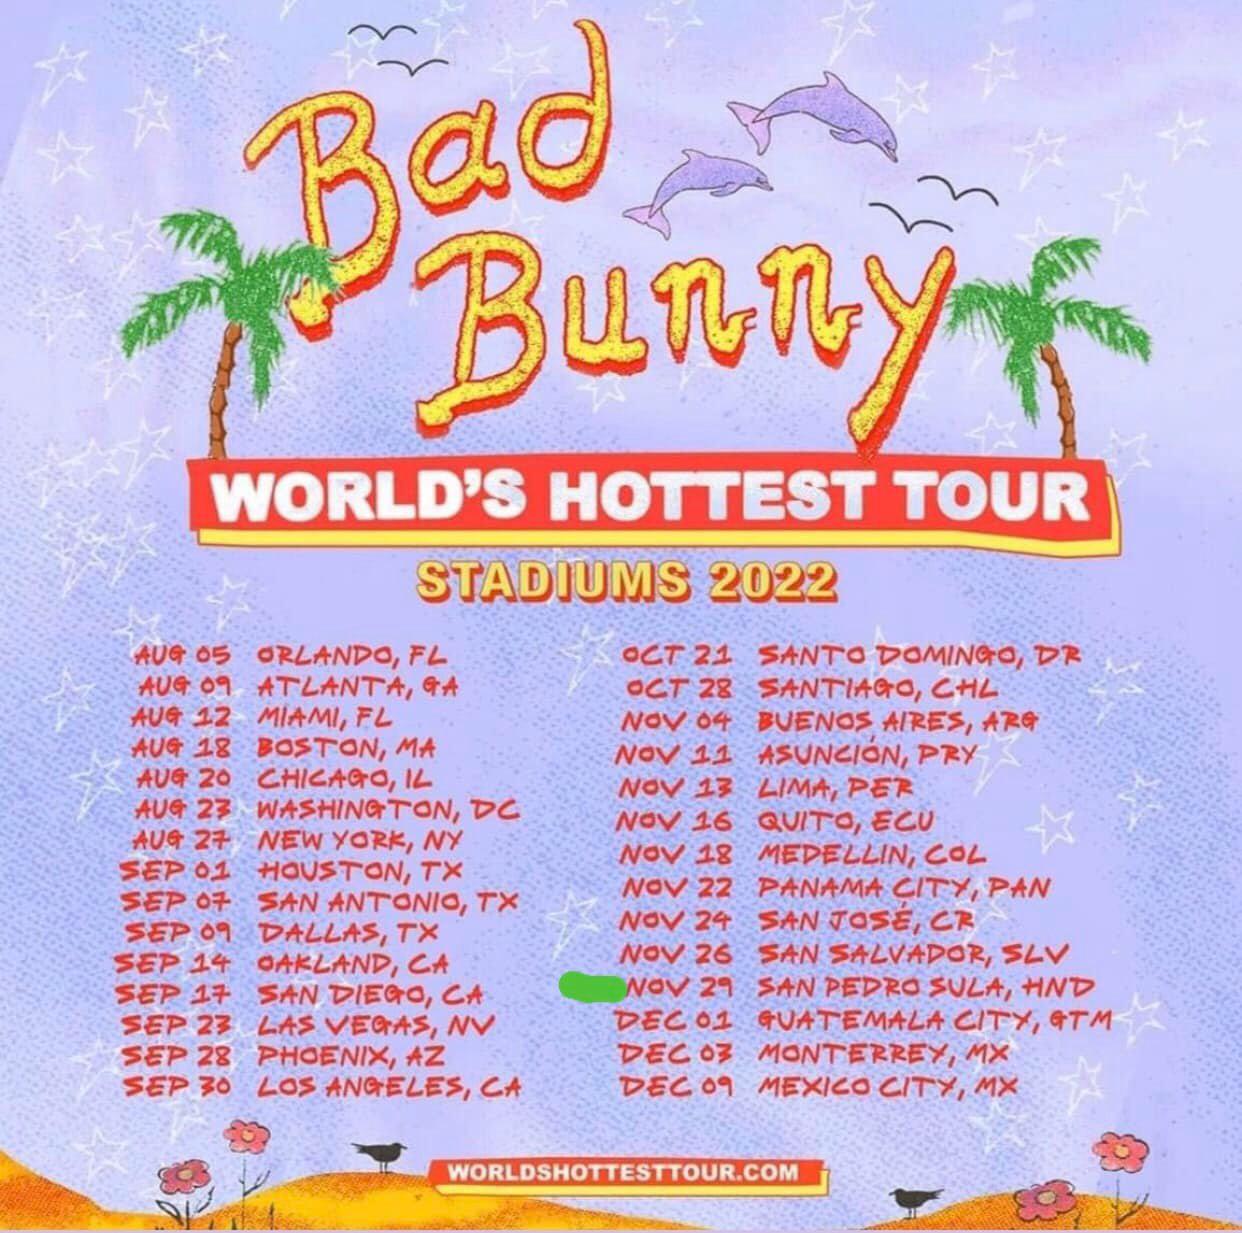 Honduras es uno de los países que visitará Bad Bunny con su gira World’s Hottest Tour.